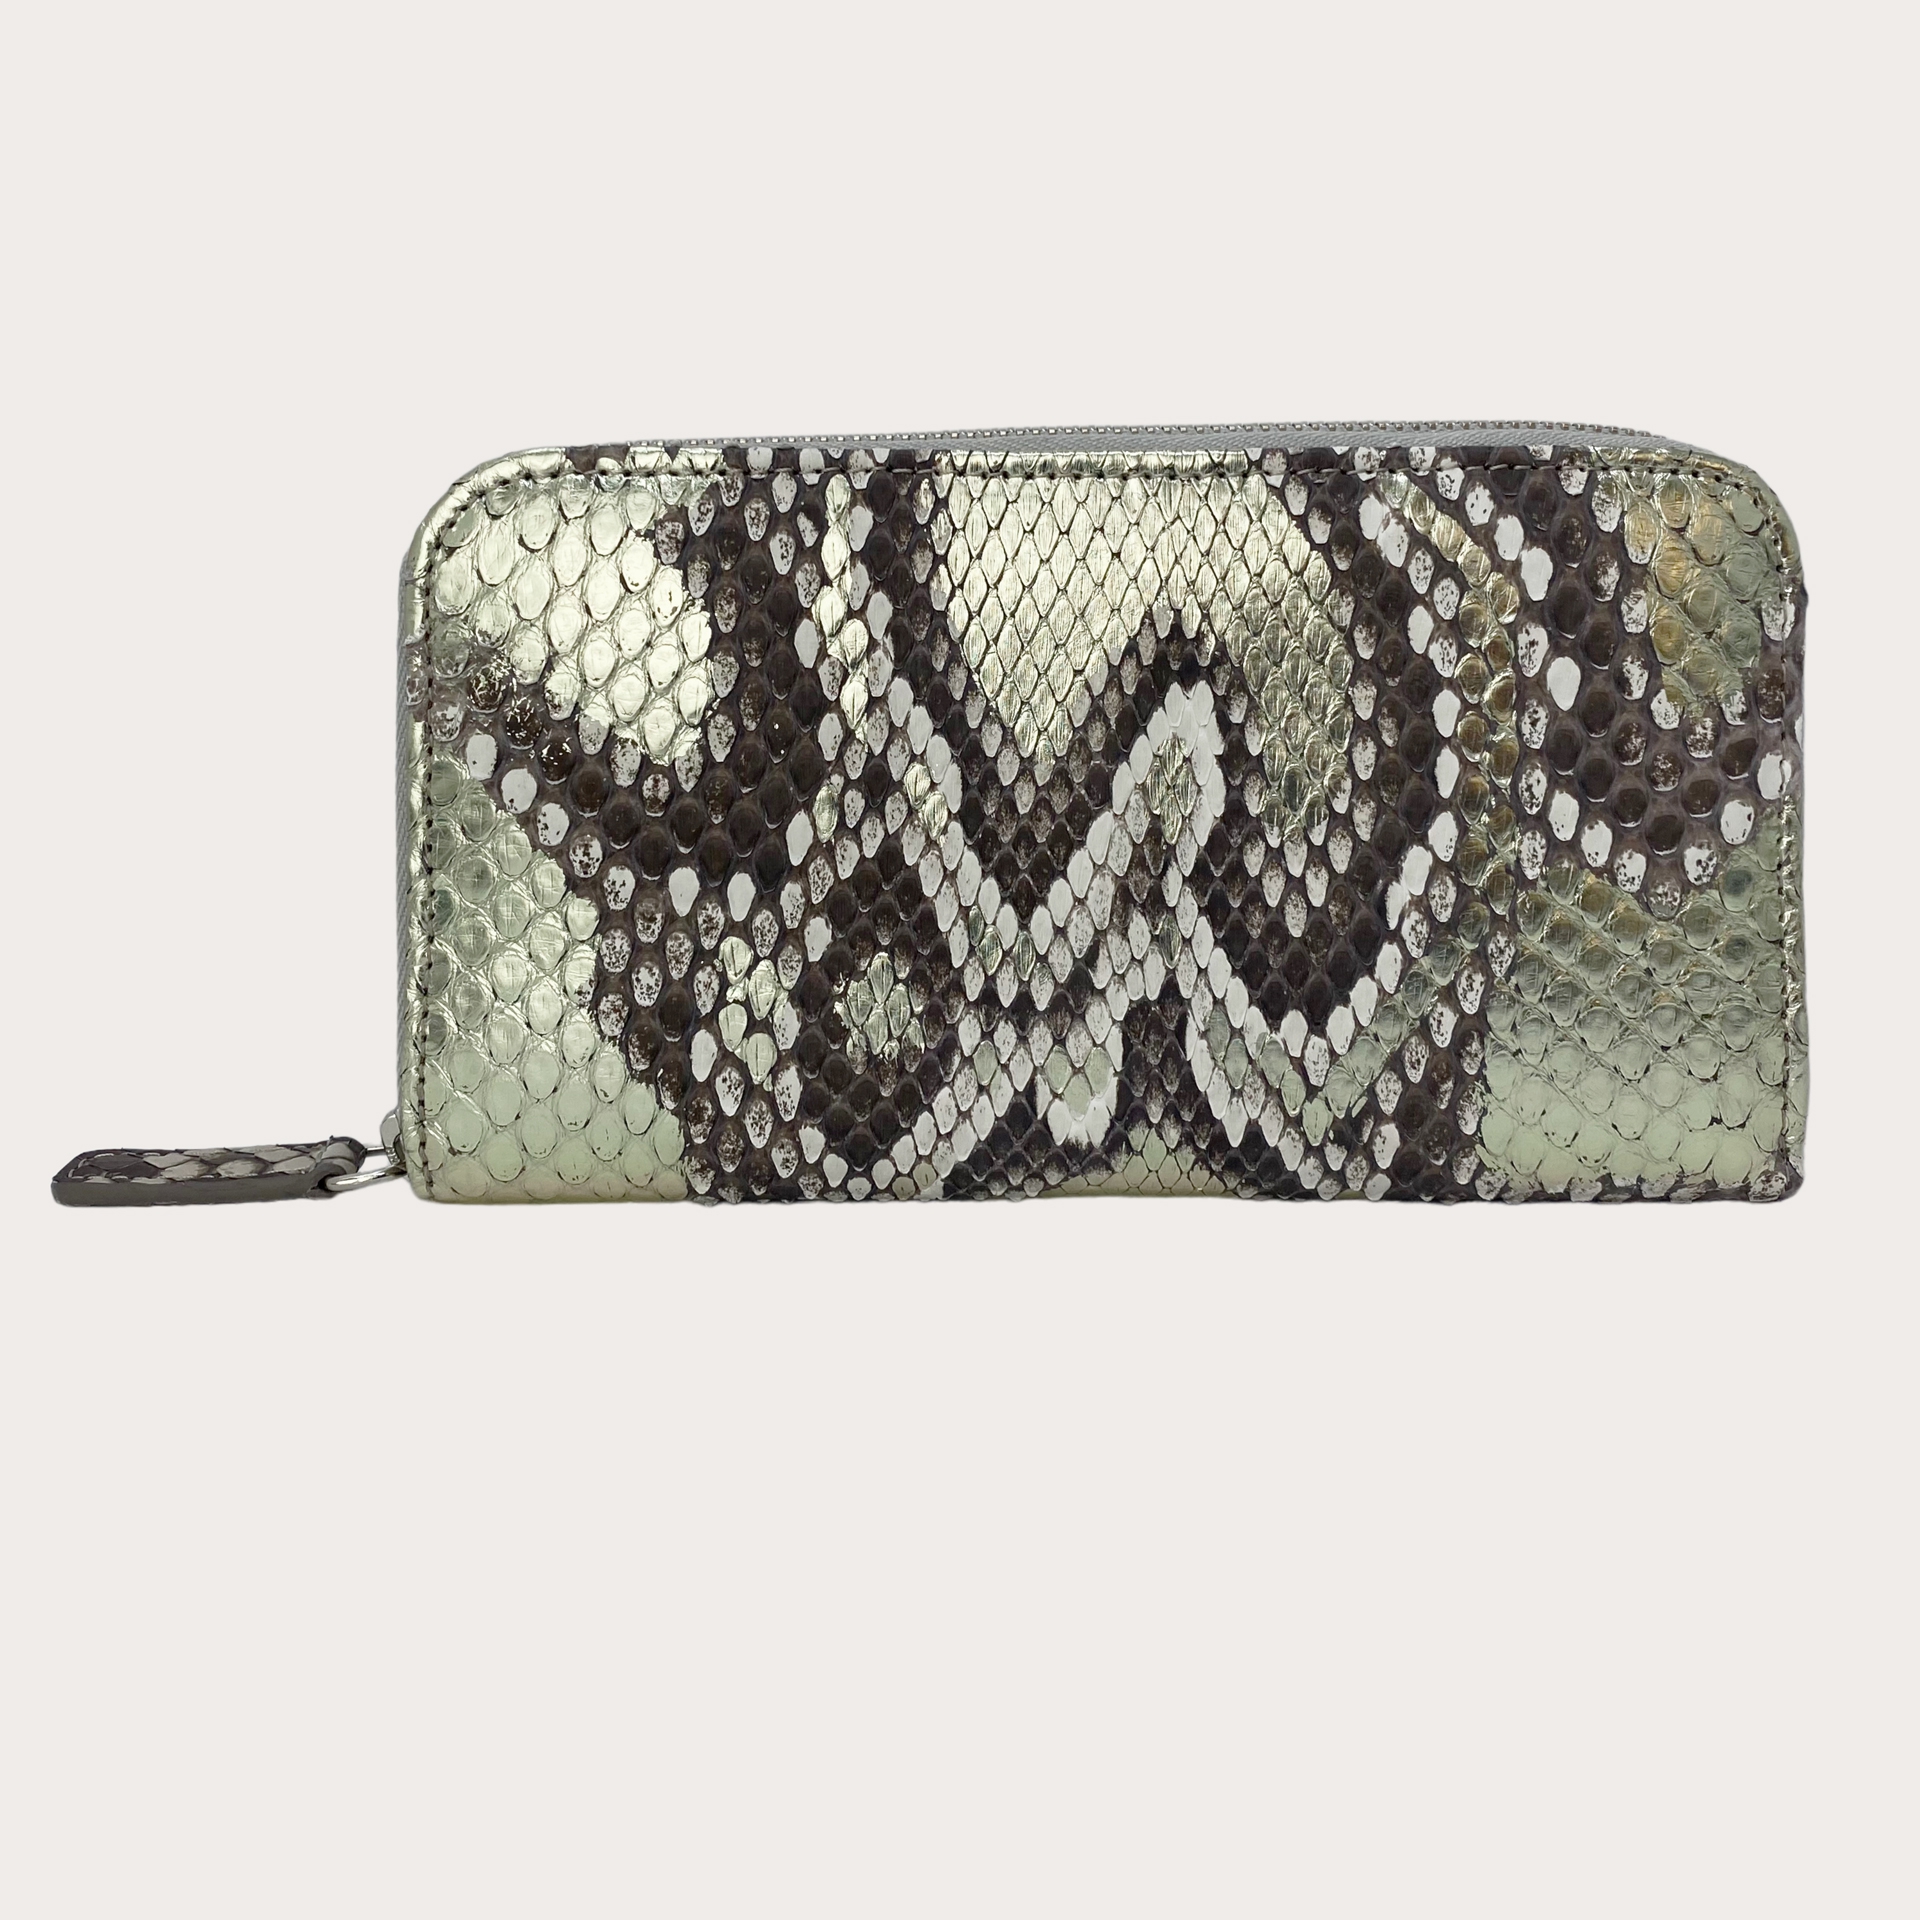 BRUCLE Elegante billetera de mujer en piel de pitón, color platino